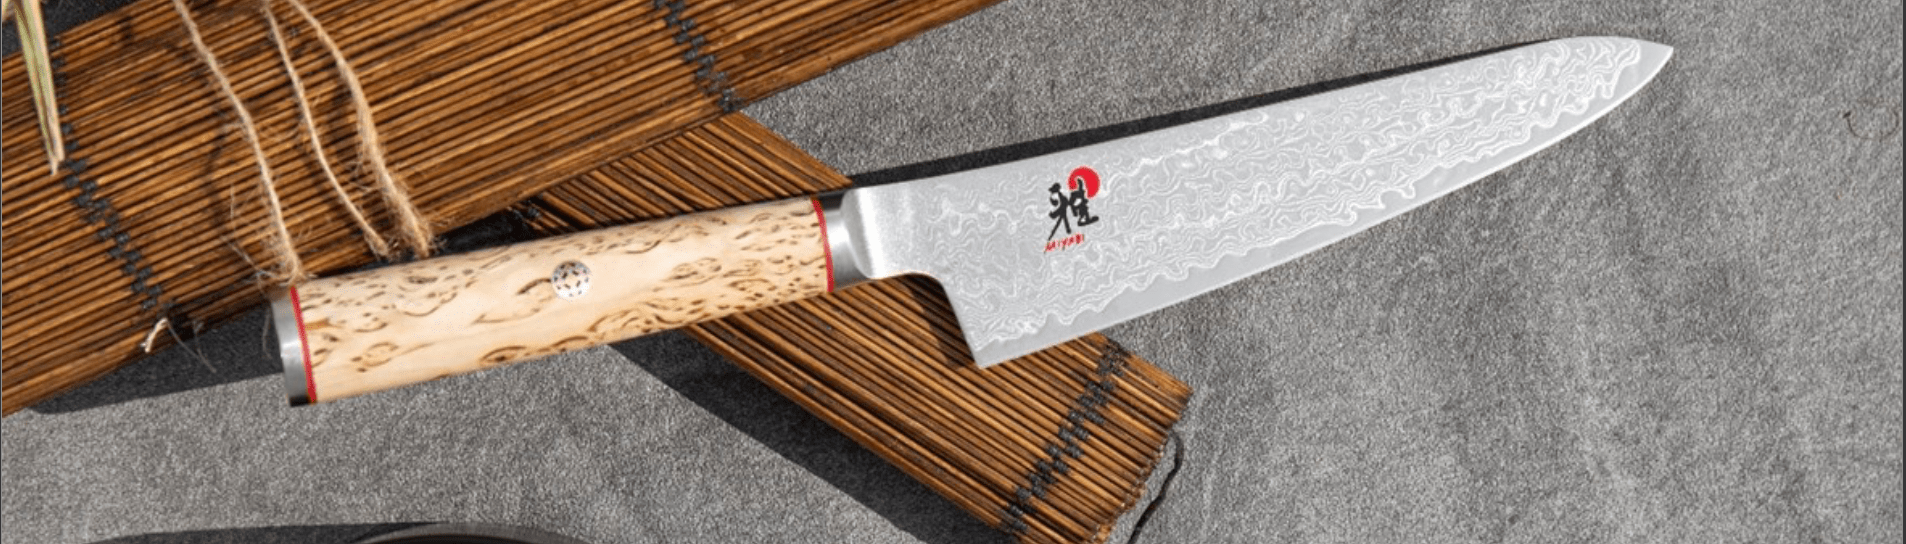 Oosterse Koksmessen ~ Japanse van Geweldige Kwaliteit The Old Man Knives & Tools